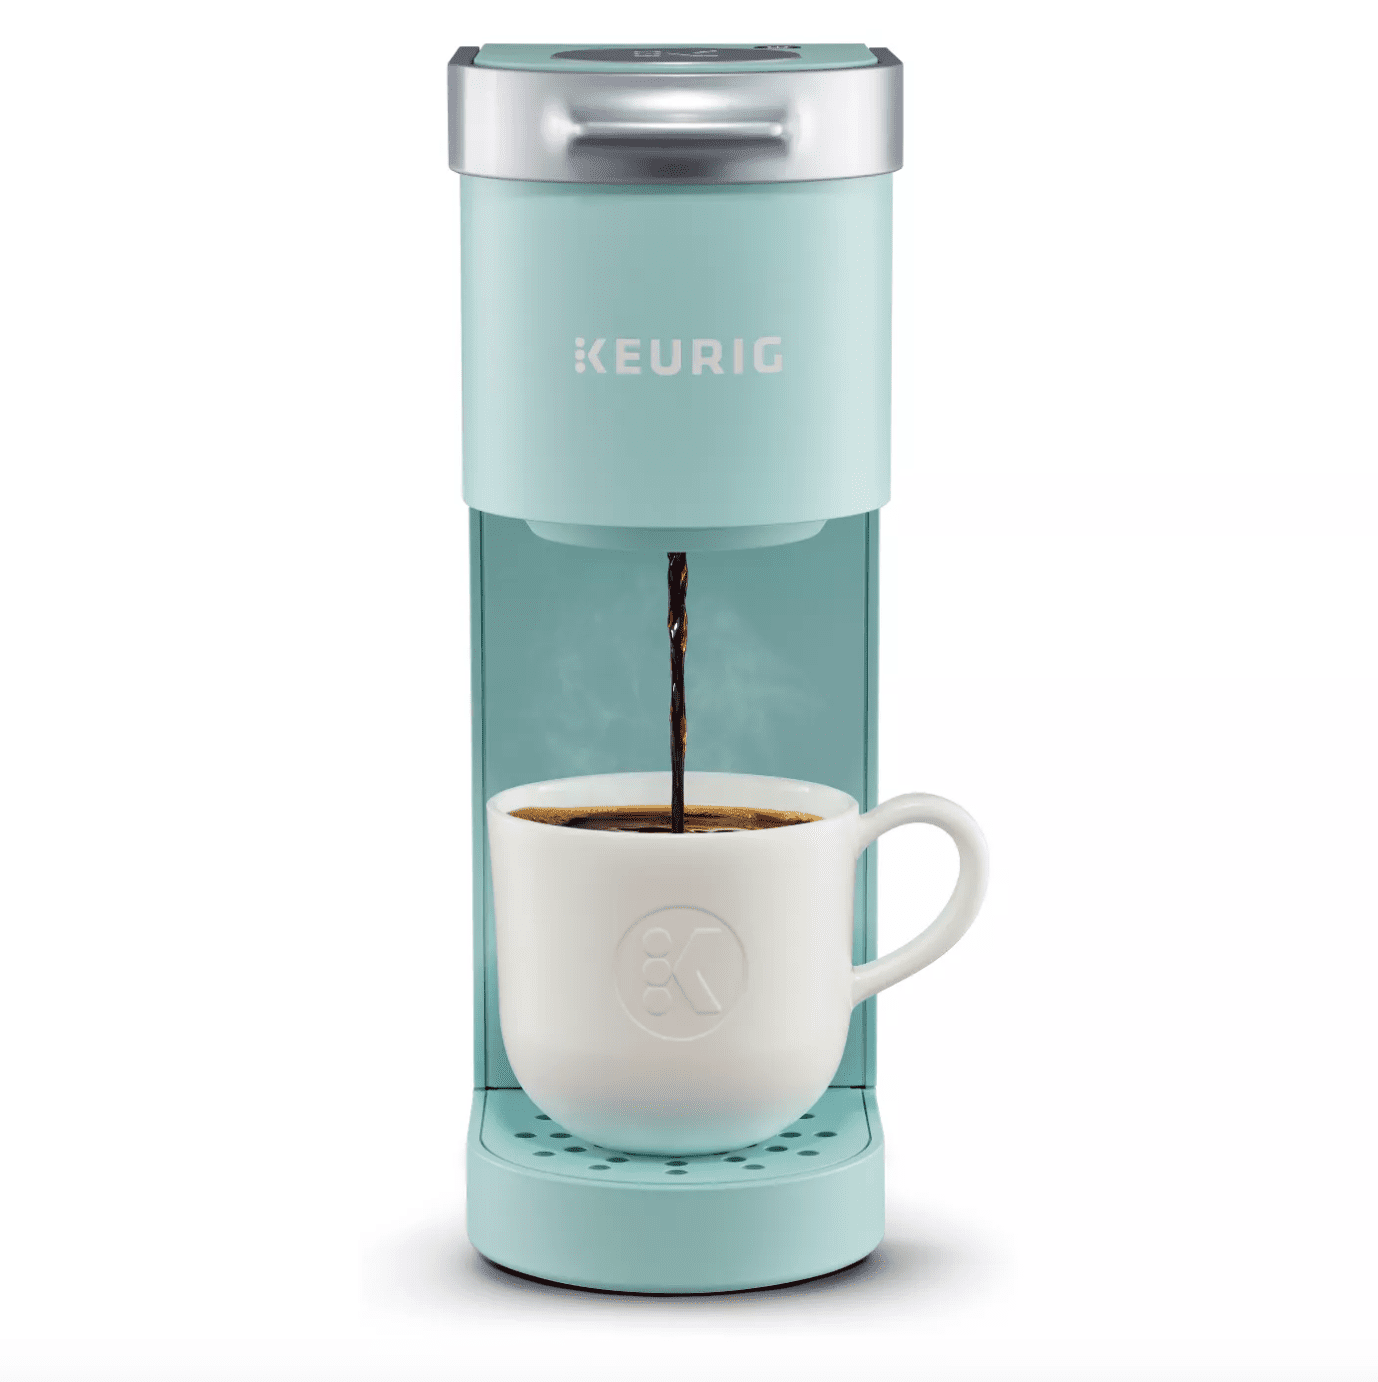 Keurig K-Mini Single-Serve K-Cup Coffee maker